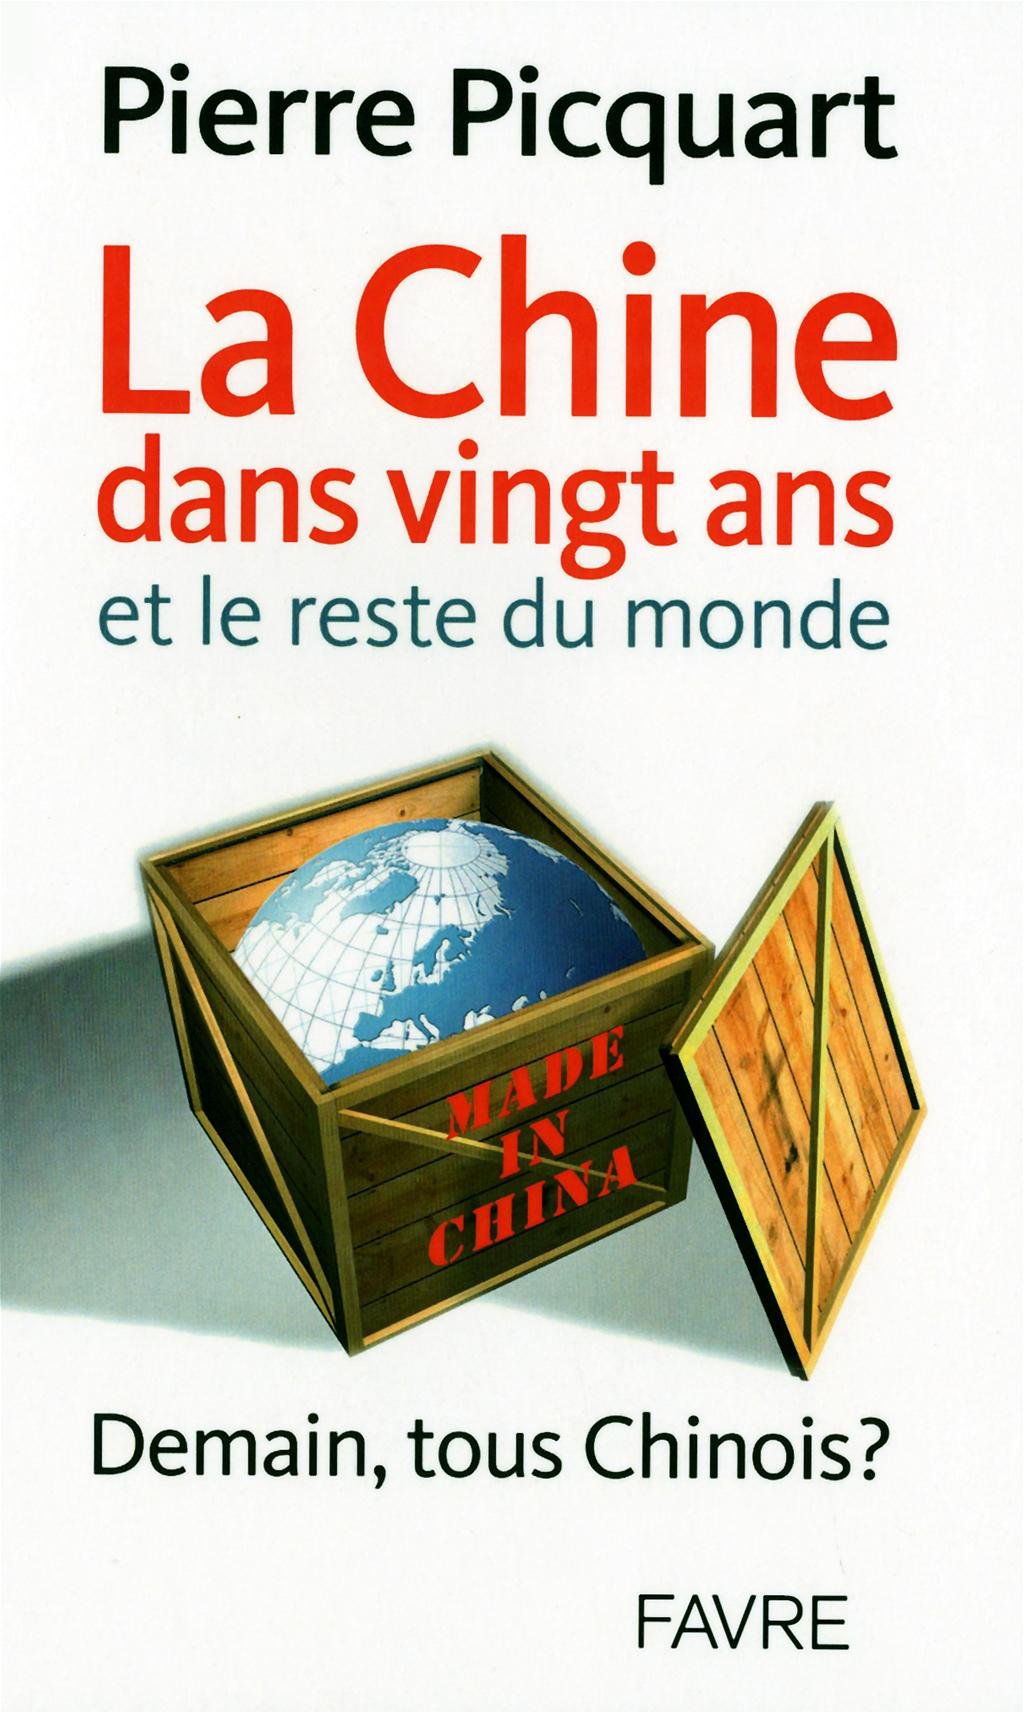 Livre ISBN 2828911993 La Chine dans vingt ans et le reste du monde (Pierre Picquart)